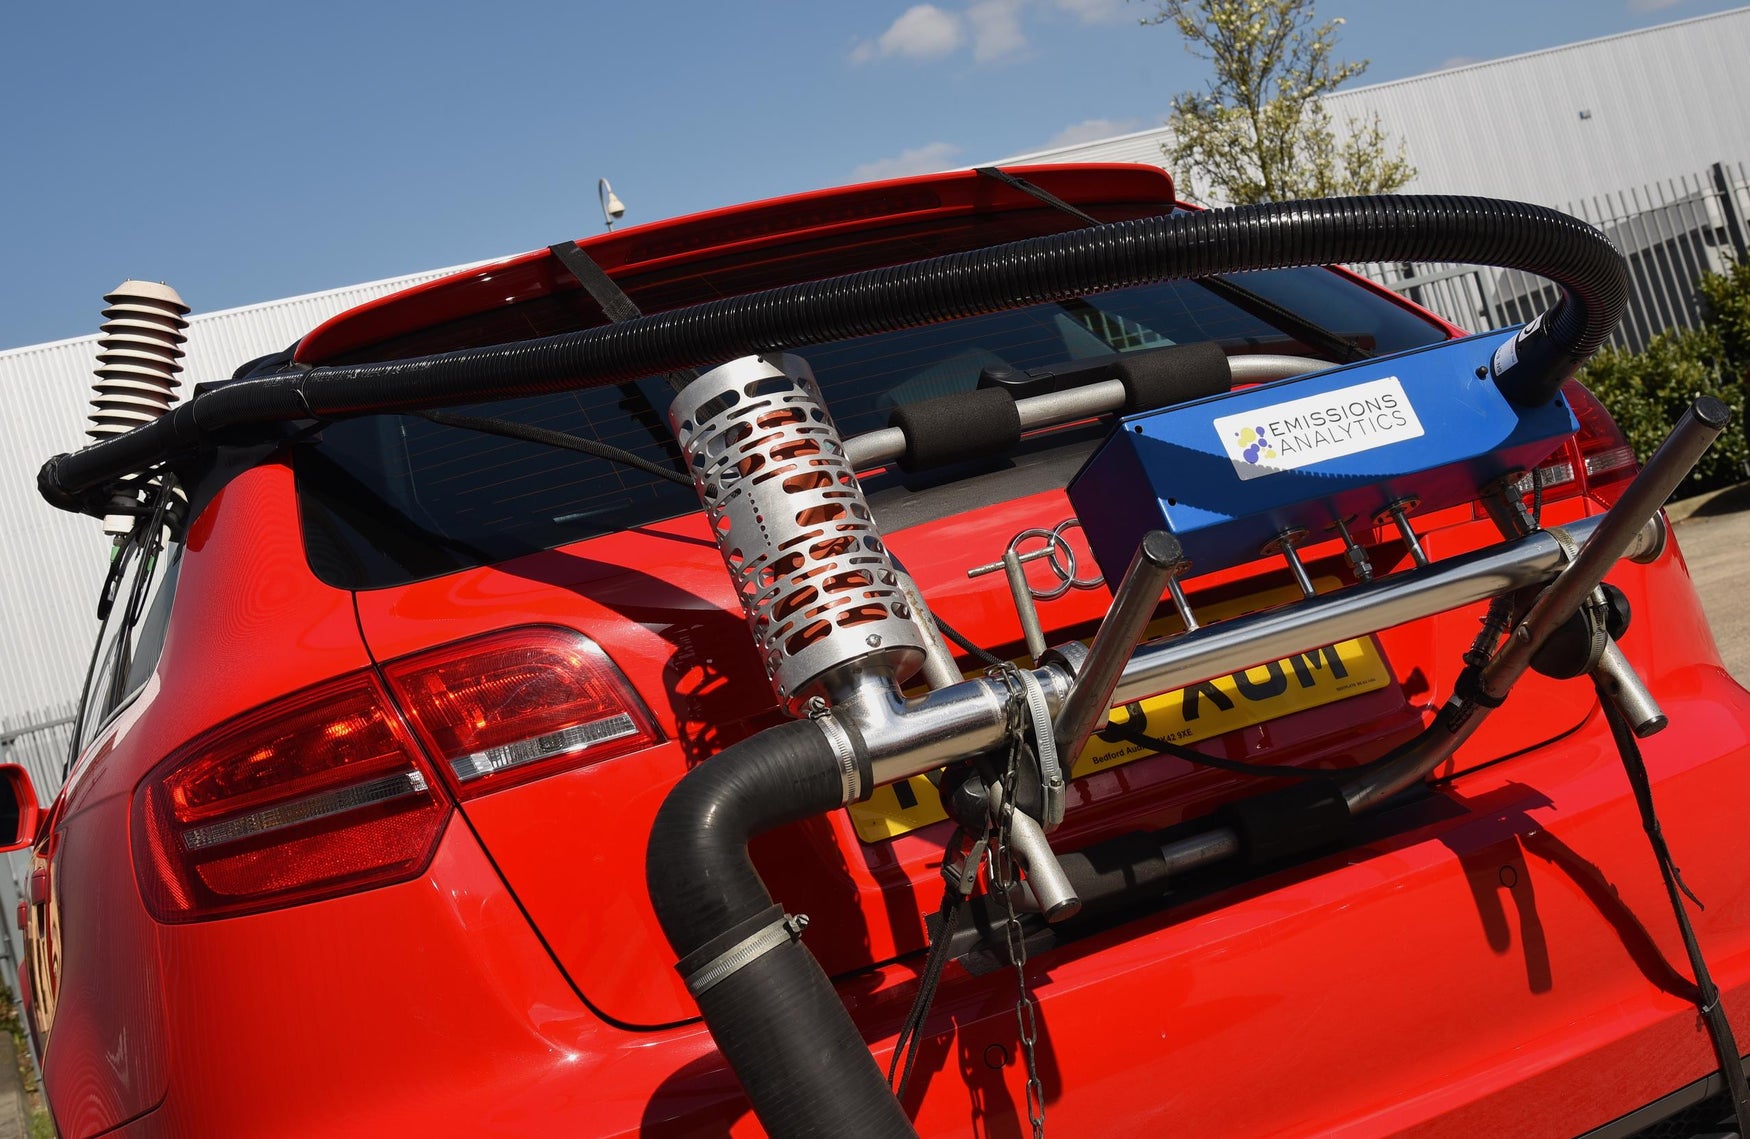 Audi A3 emissions testing rig